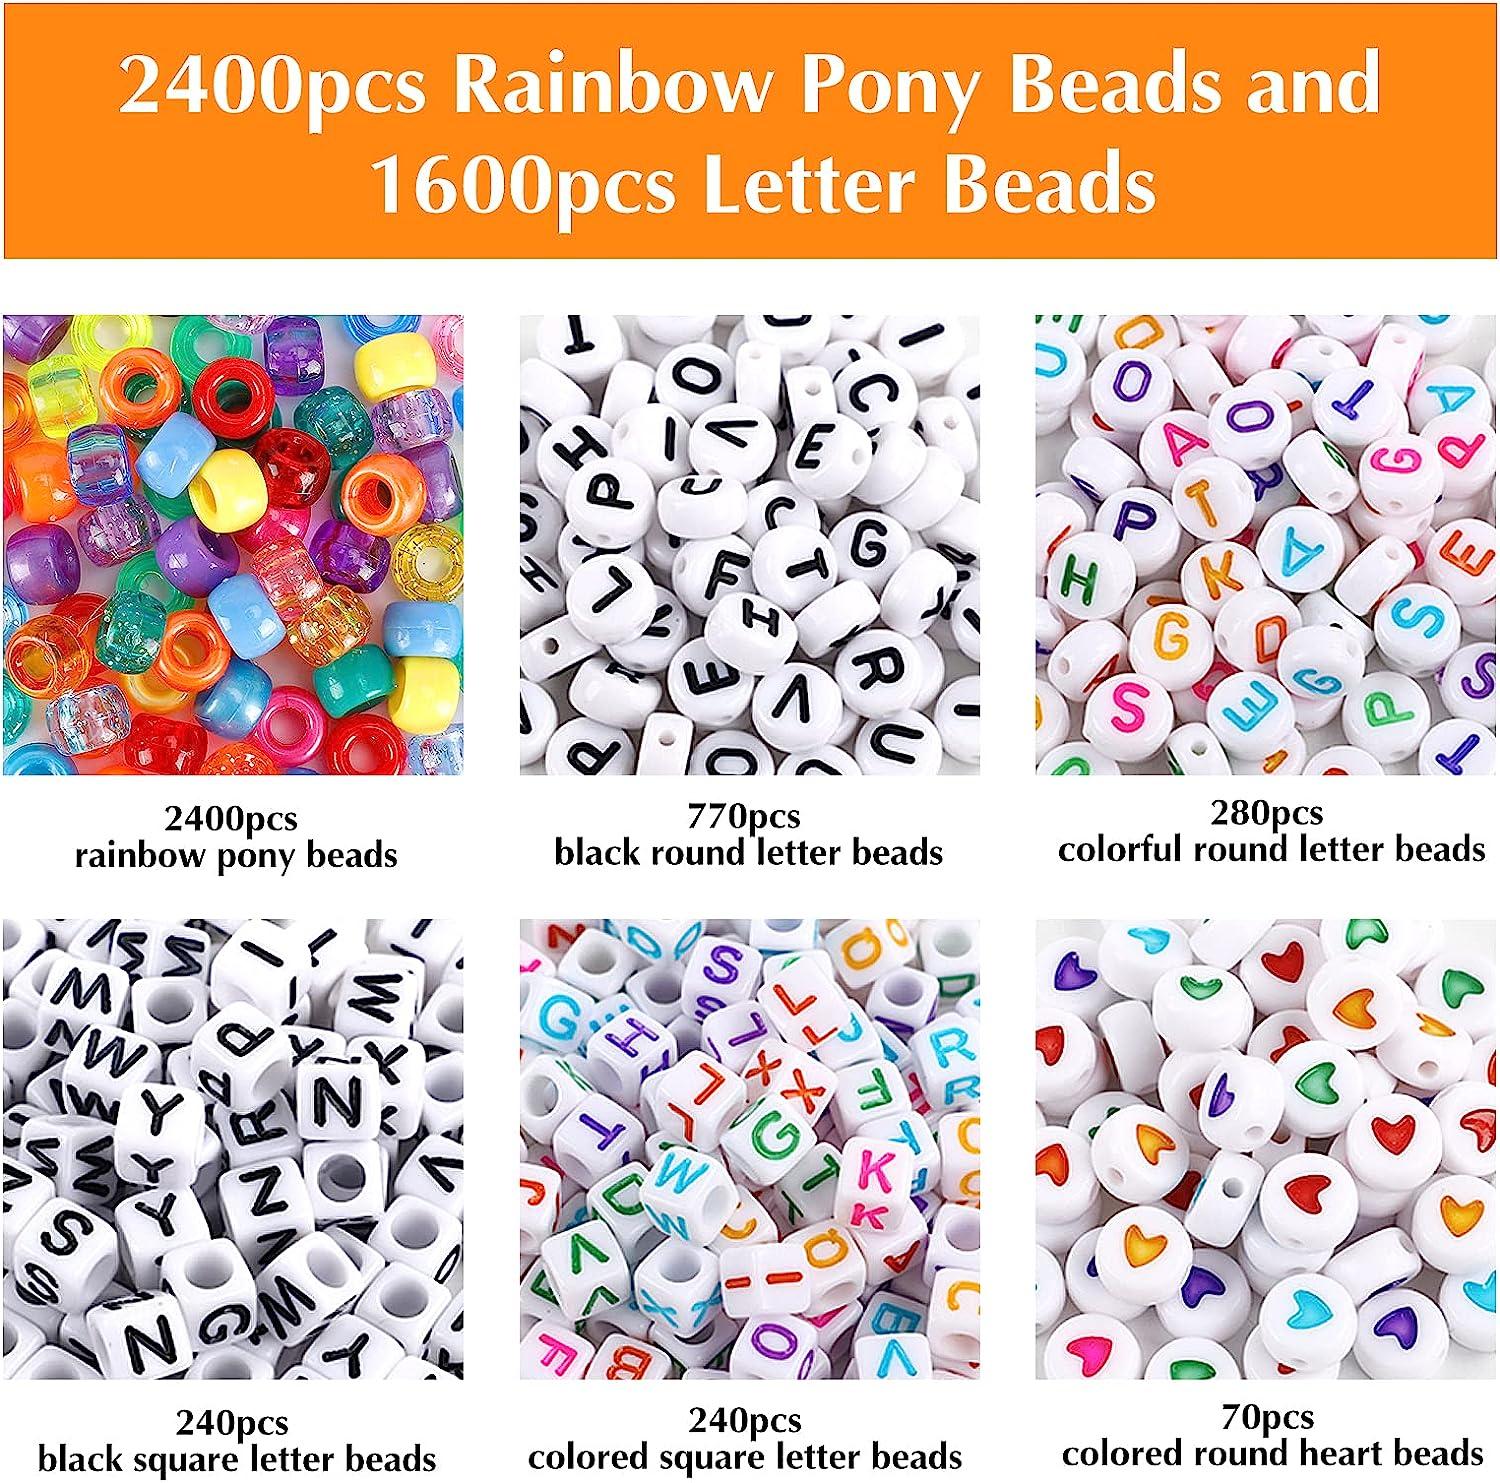  UOONY 4000pcs Pony Beads Kit, 2400pcs Rainbow Kandi